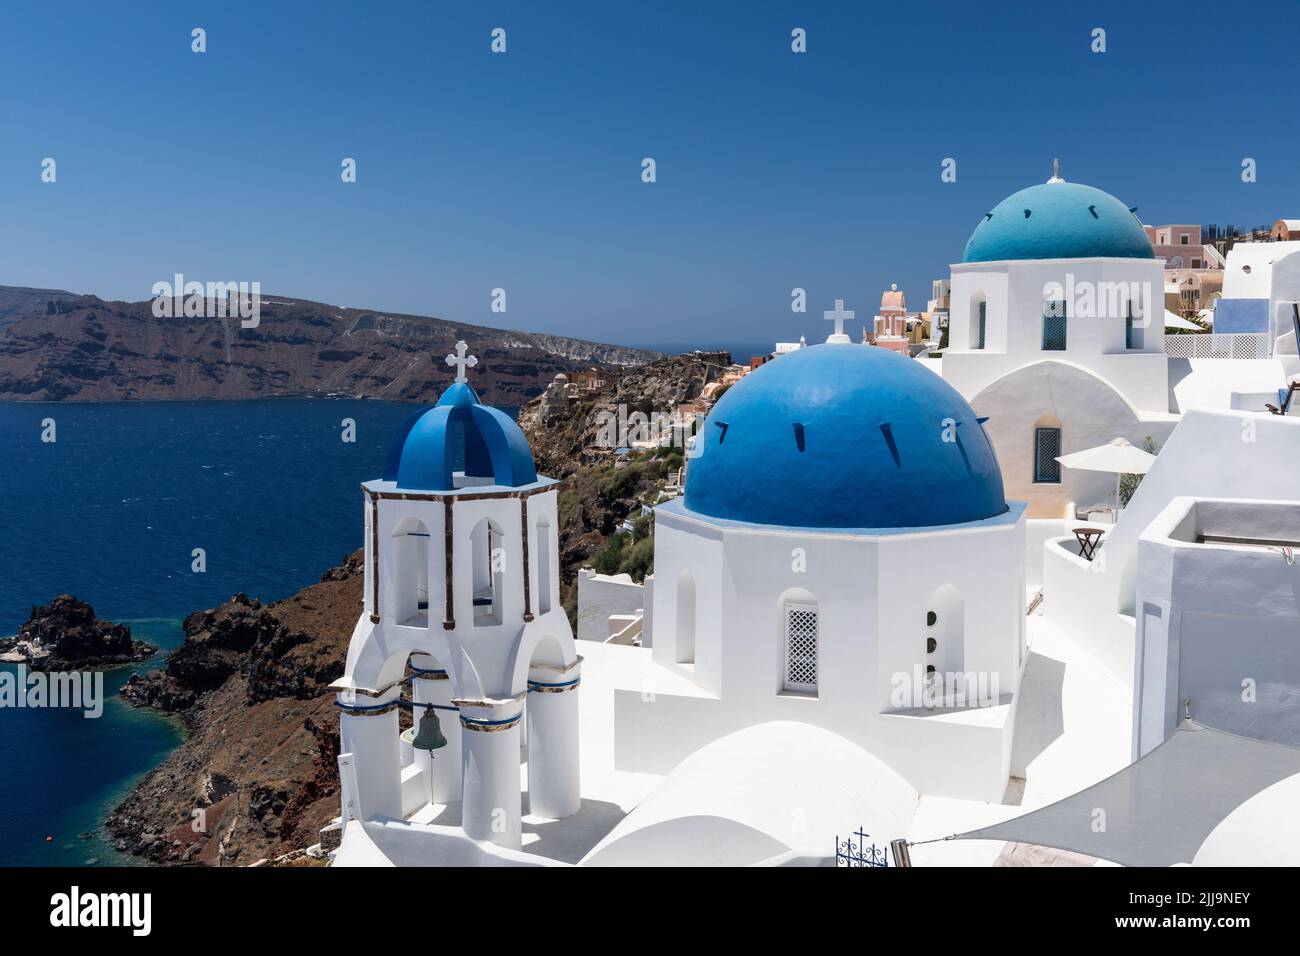 Los famosos y emblemáticos Domos Azules de Oia están situados en el borde de la Caldera en Oia, Santorini, islas Cícladas, Grecia, Europa Foto de stock